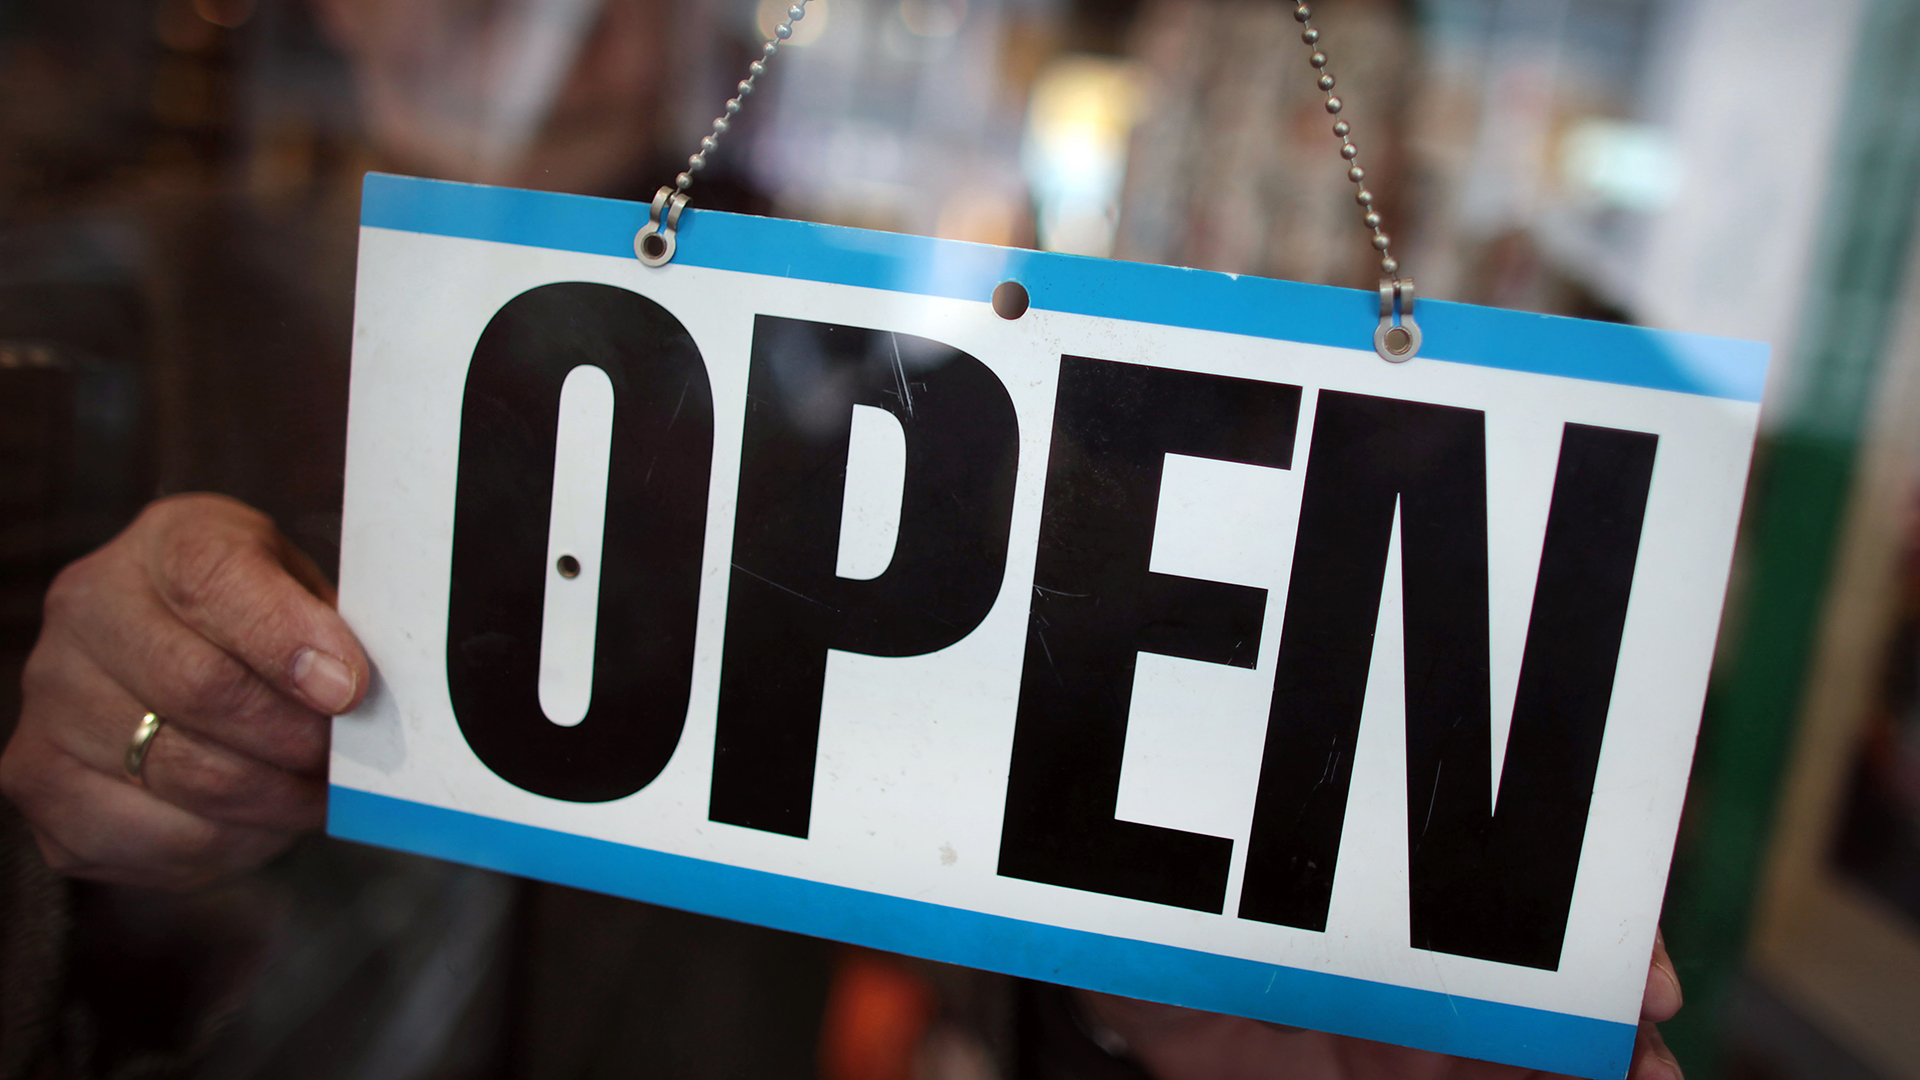  Ein Ladeninhaber dreht an seinem Geschäft das Schild auf "open". | picture alliance/dpa